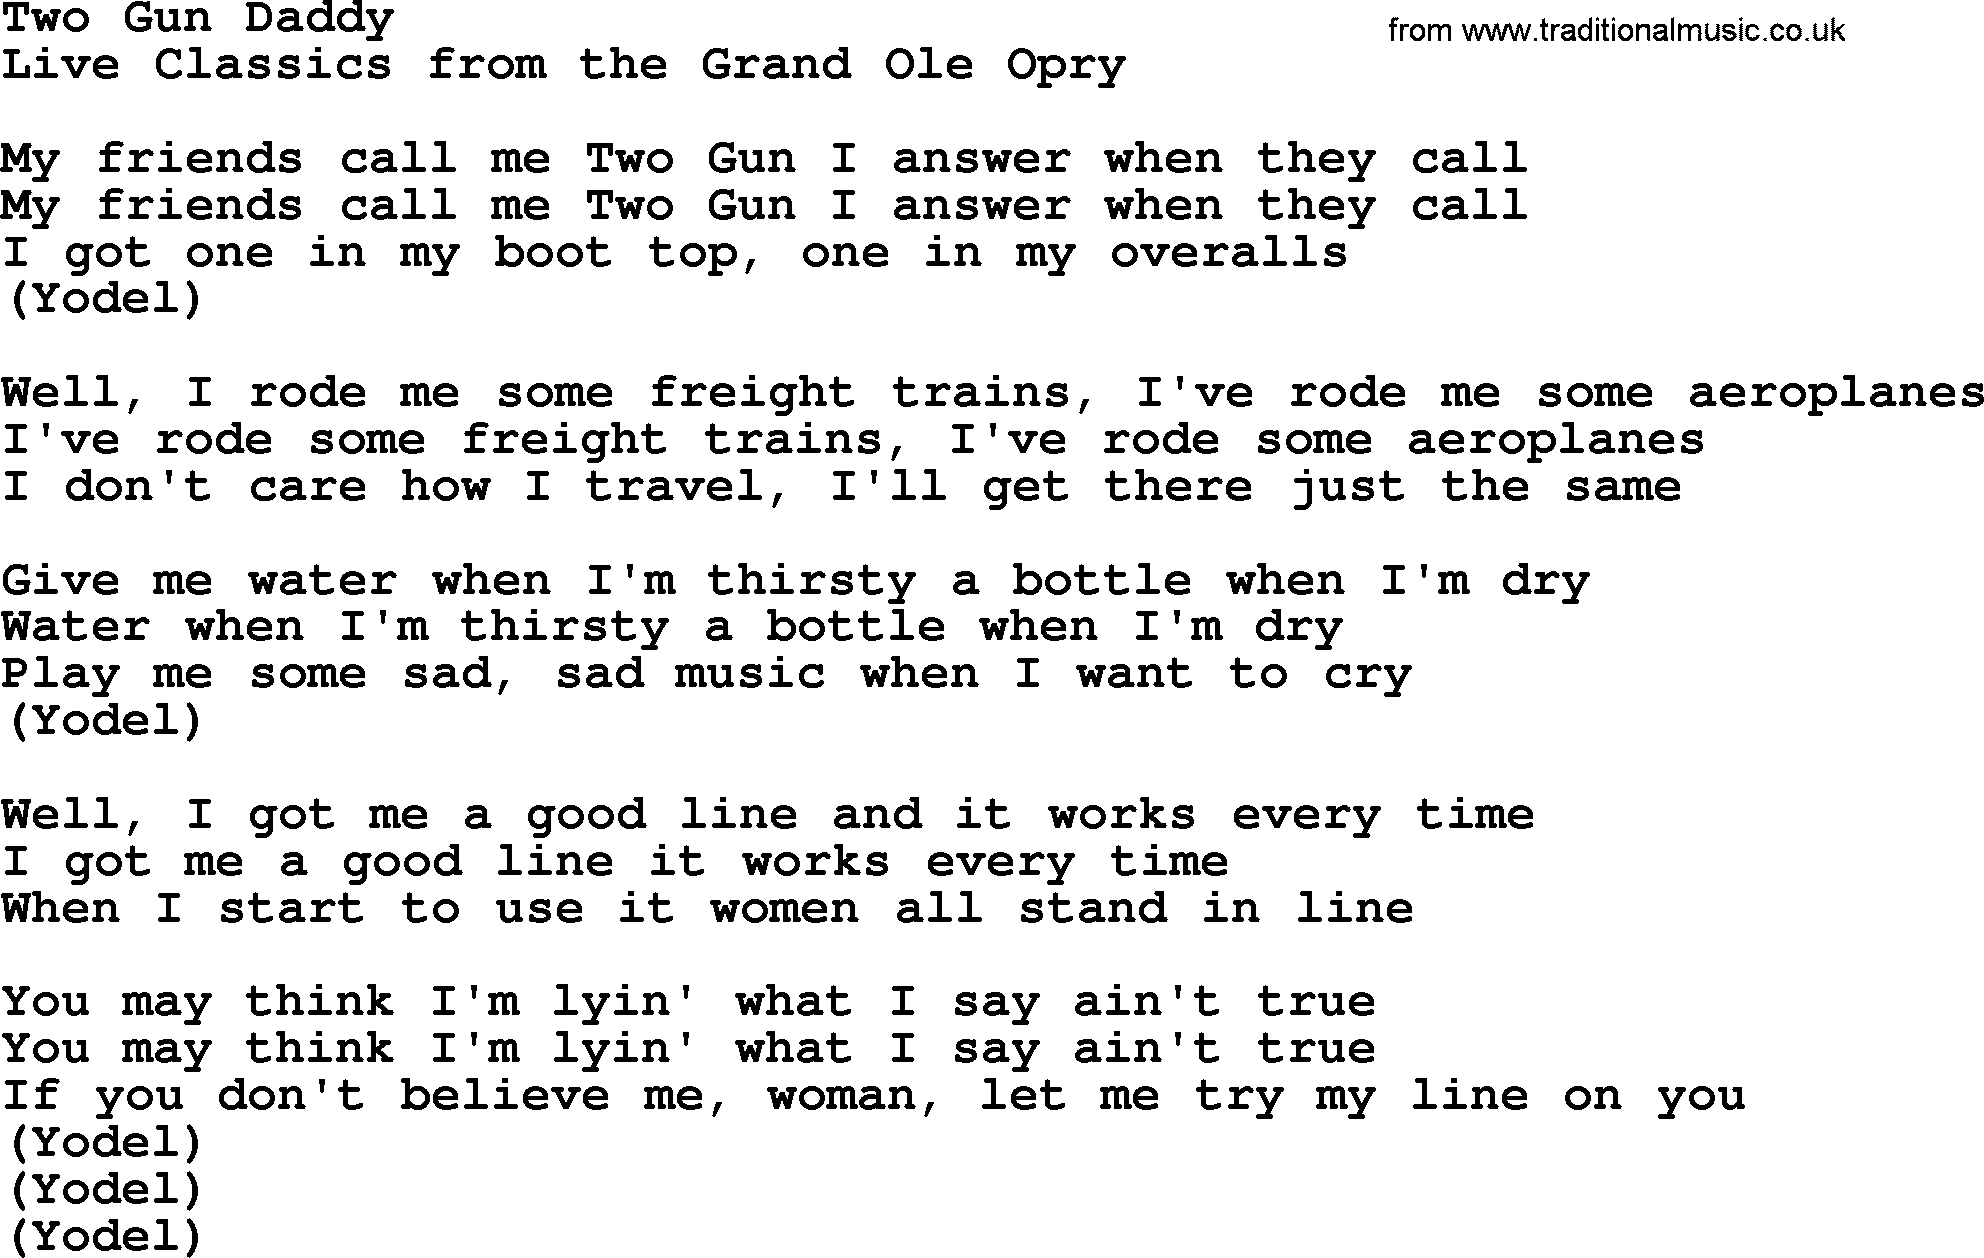 Marty Robbins song: Two Gun Daddy, lyrics